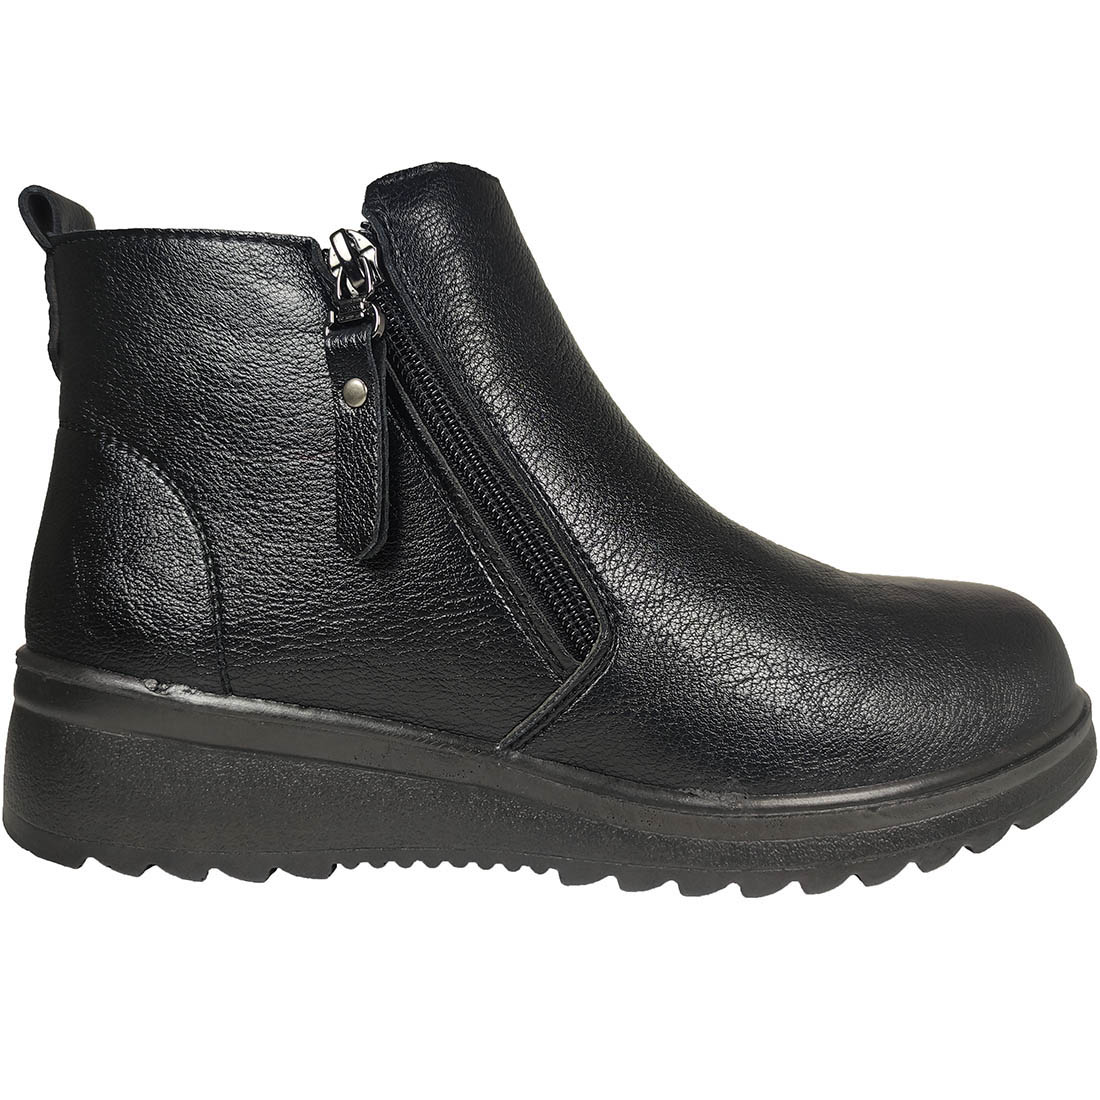 Womens Boots Mira & Max 9882 Black